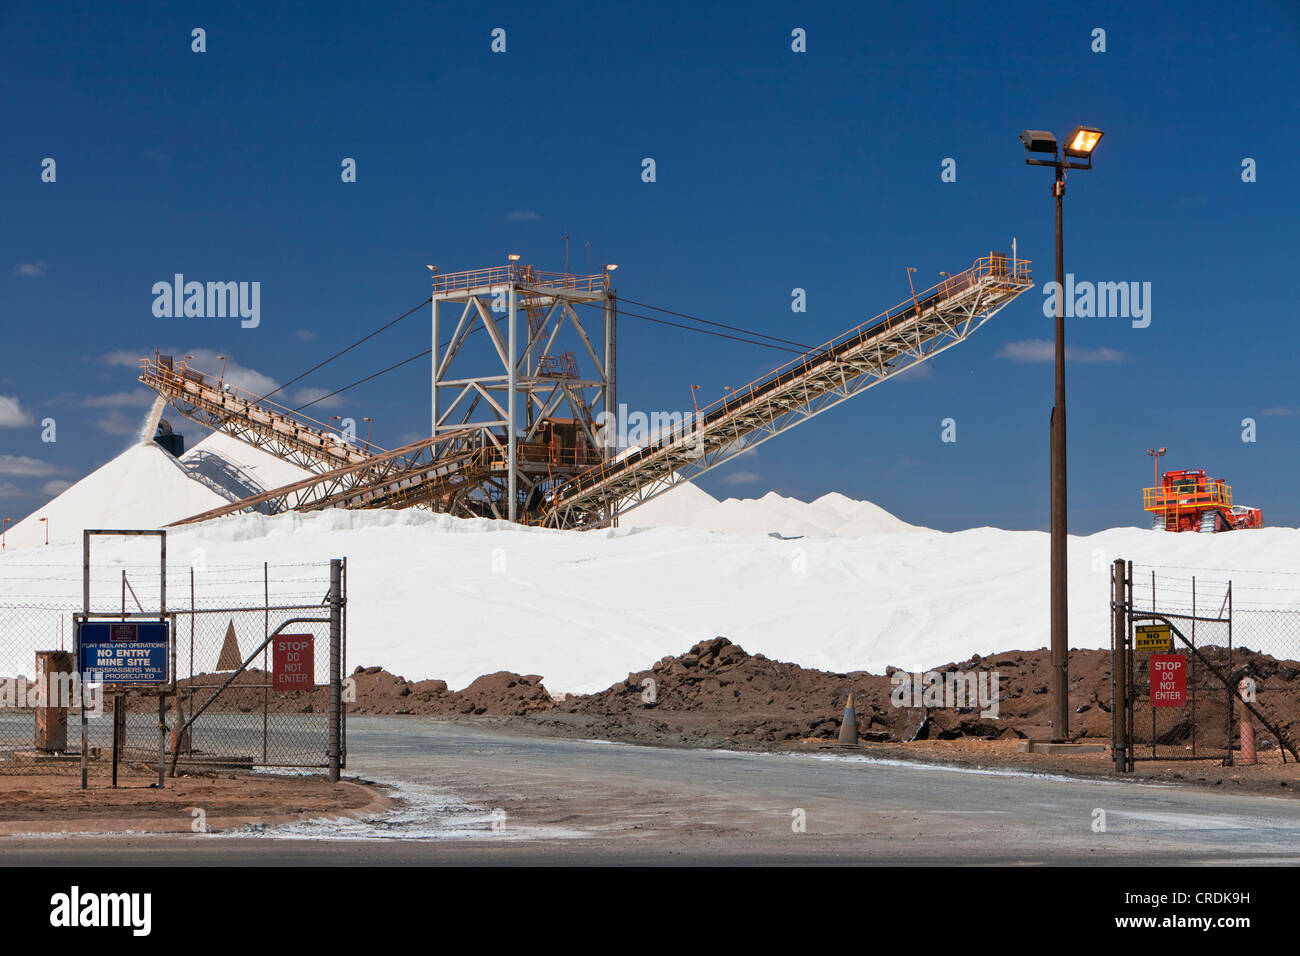 Meer Salzgewinnung durch die britisch-australische Bergbauunternehmen Rio Tinto Minerals, Port Hedland, Western Australia, Australien Stockfoto